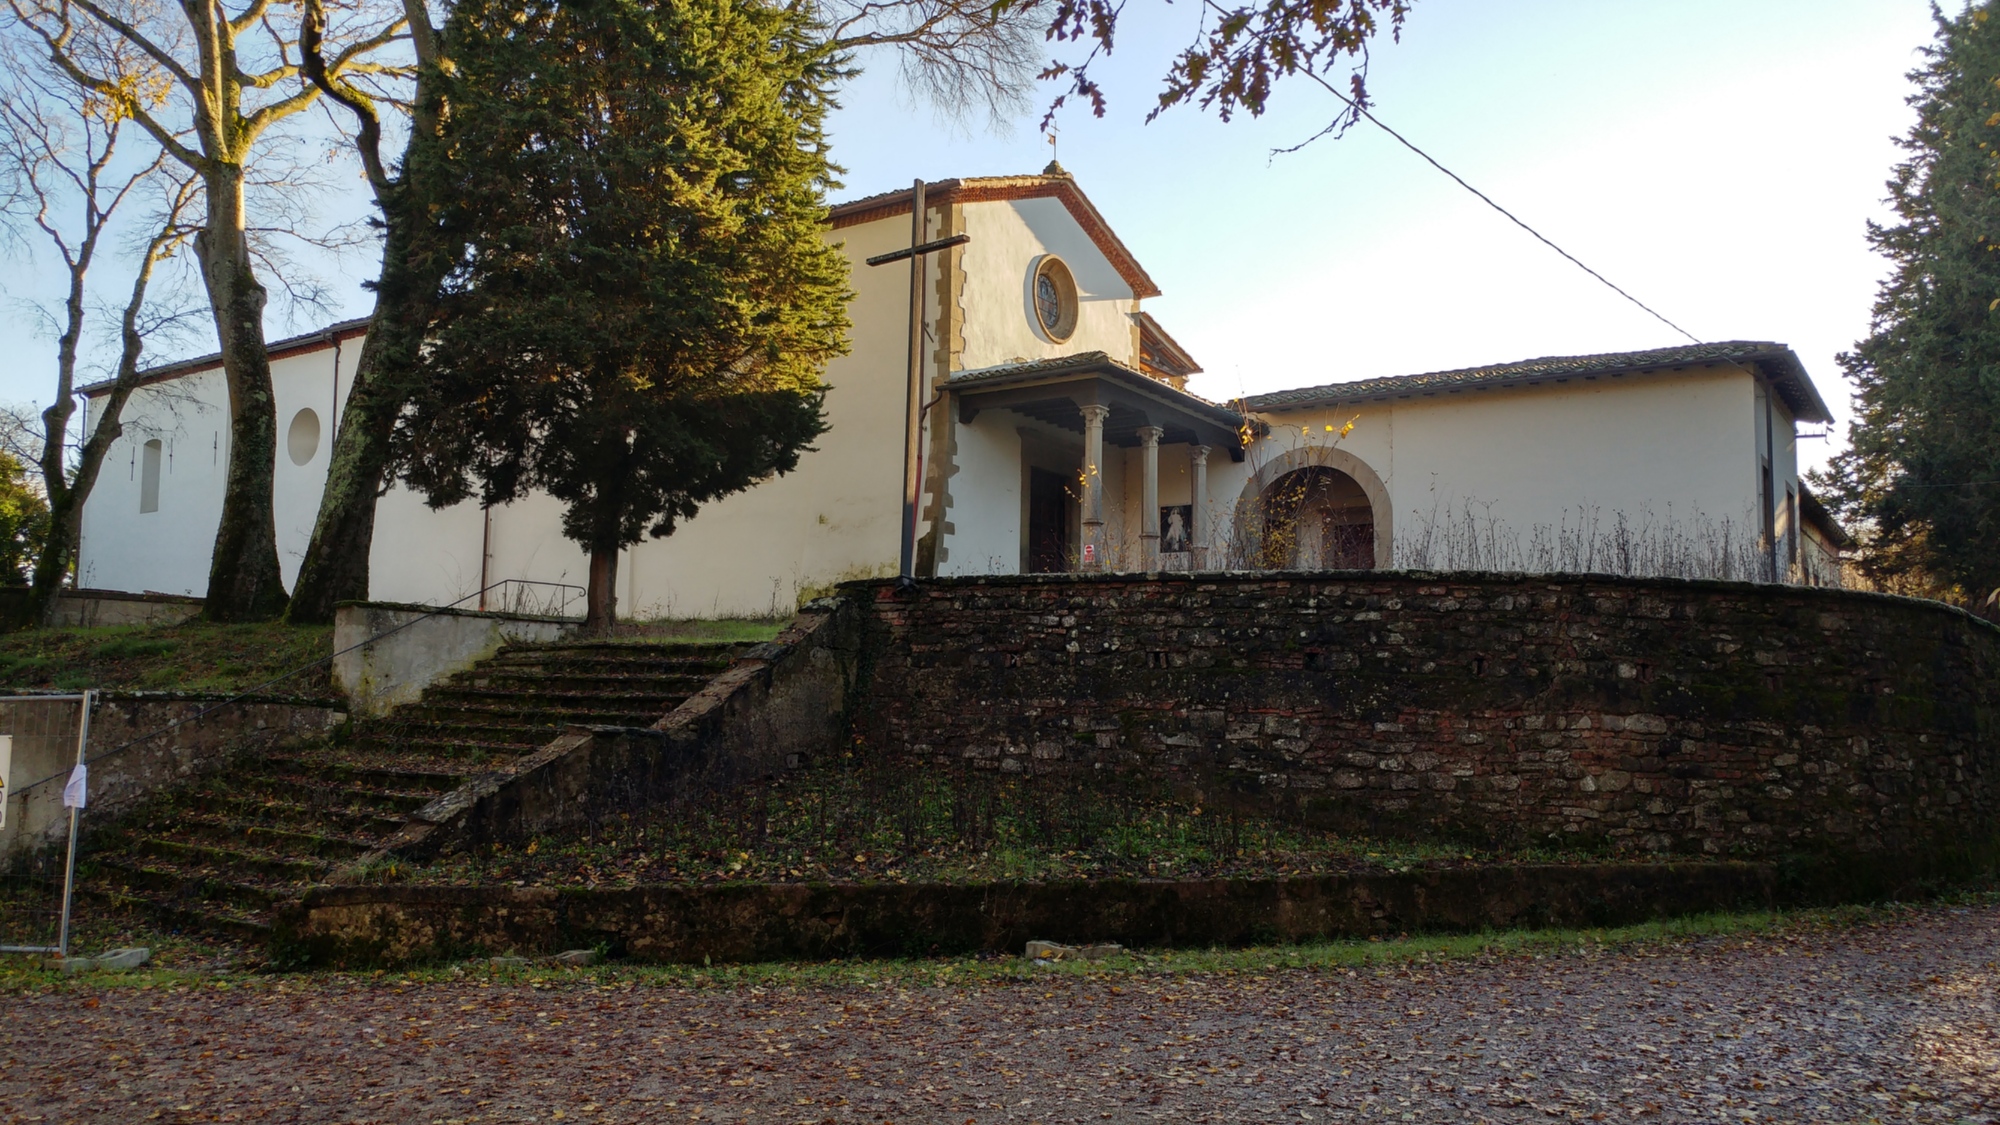 Convento di San Francesco a Montecarlo - San Giovanni Valdarno